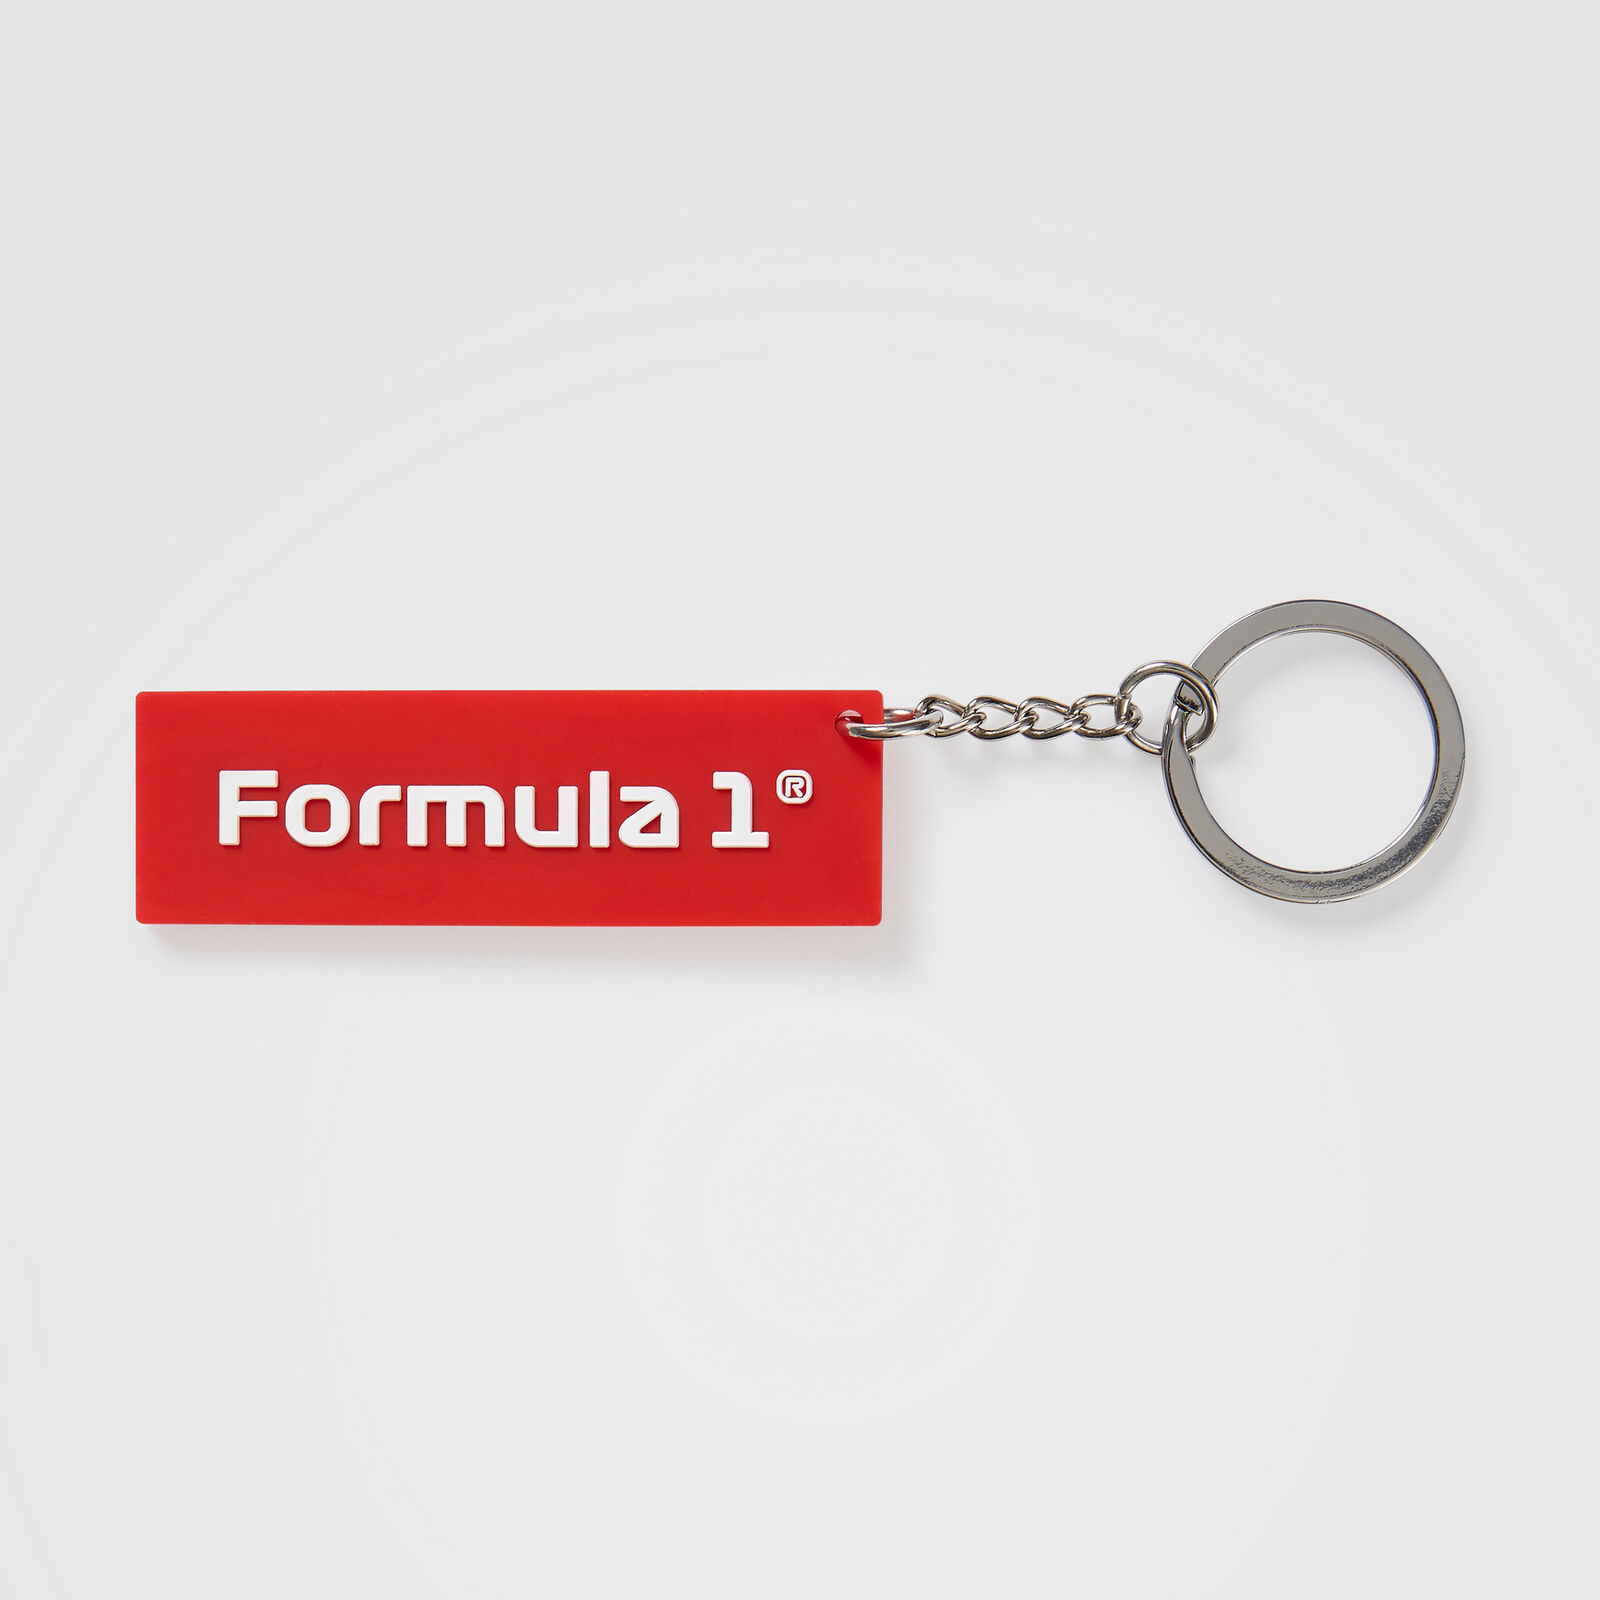 Porte-clés avec logo F1 - F1 Collection